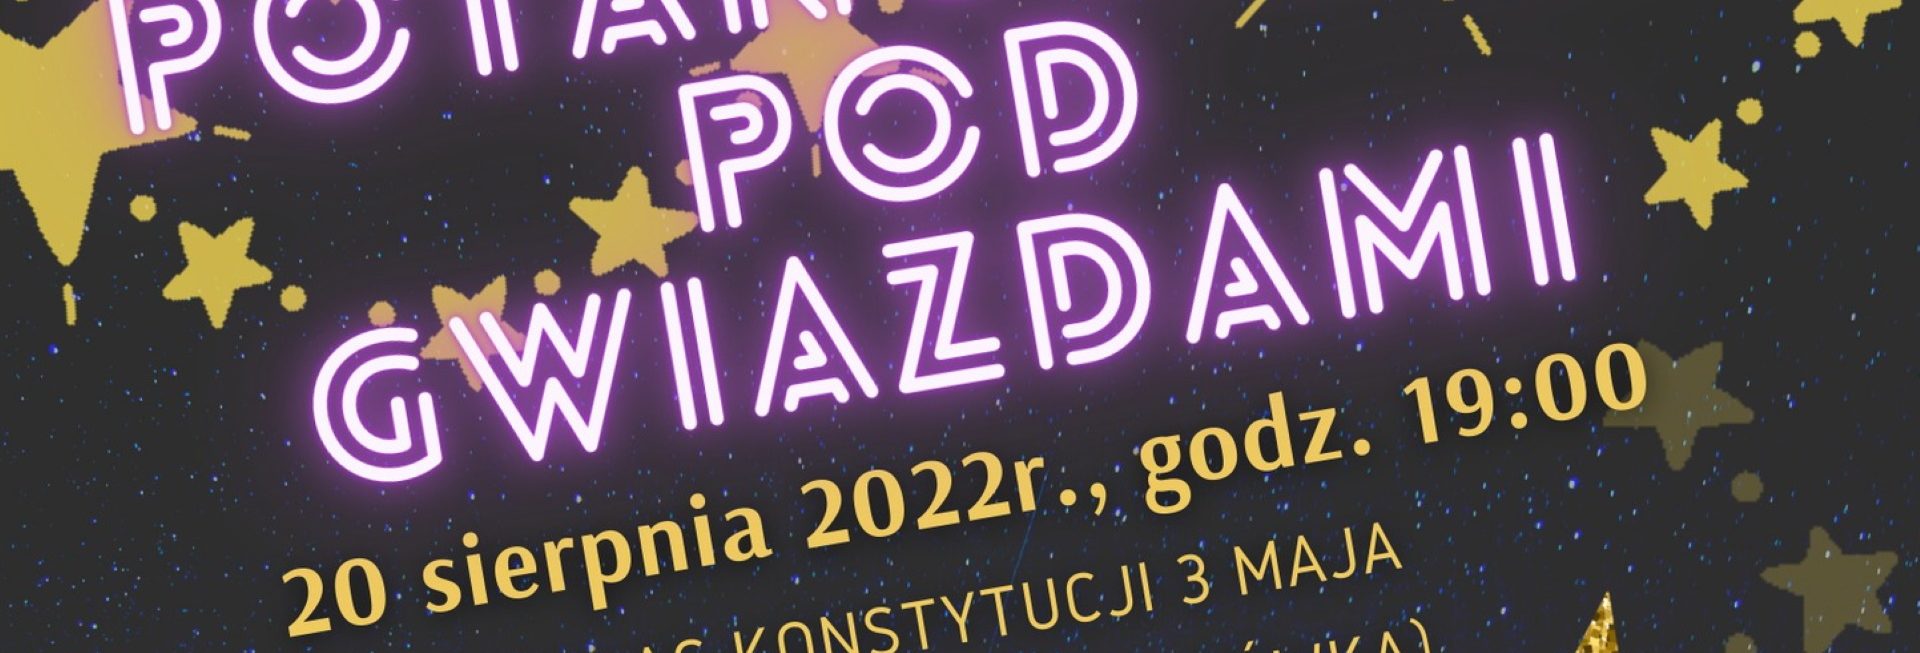 Plakat zapraszający do Bartoszyc na Potańcówkę pod Gwiazdami Bartoszyce 2022.